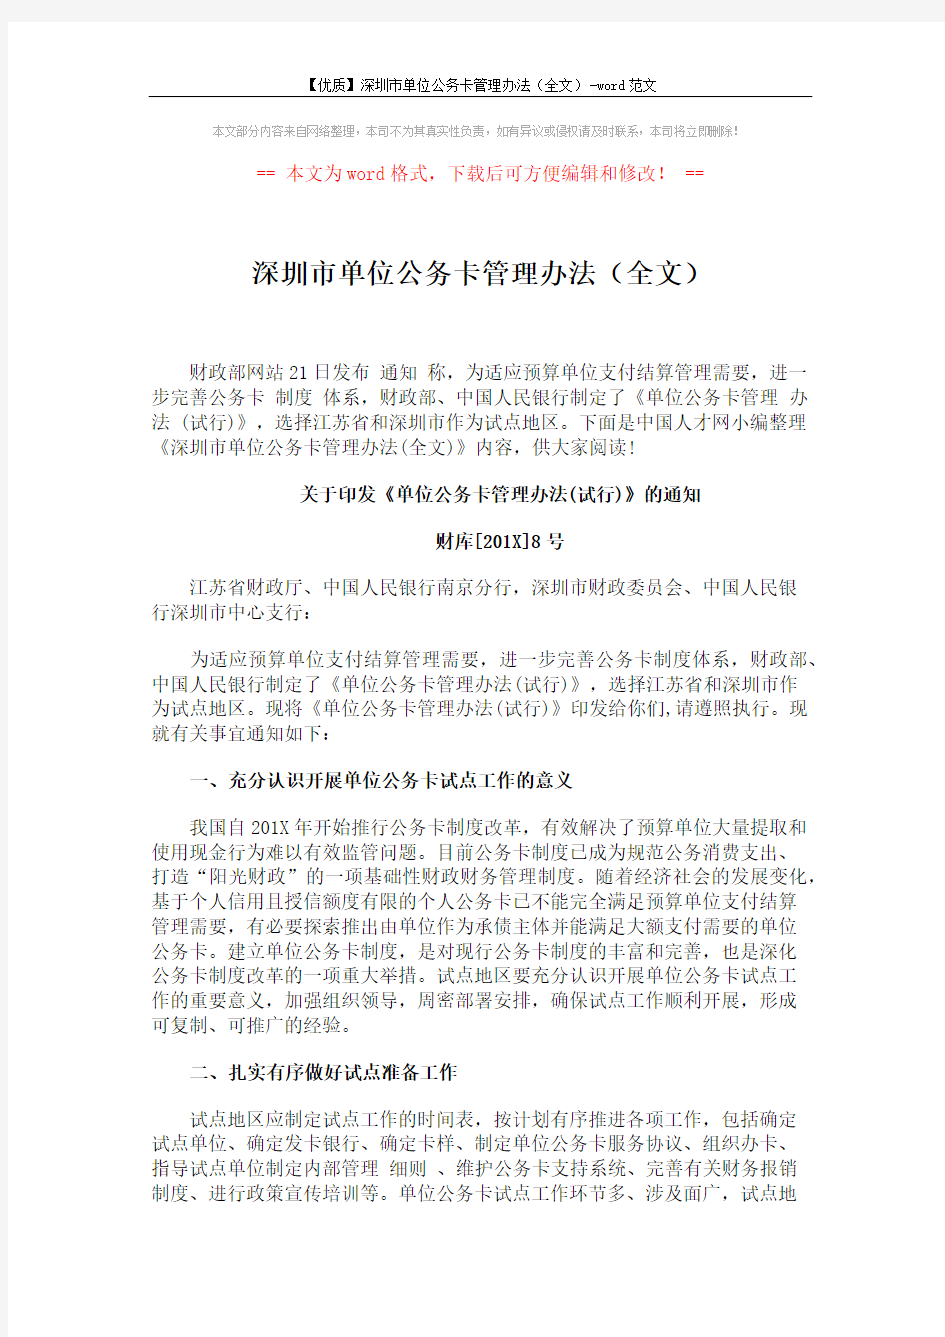 深圳市单位公务卡管理办法(全文) (5页)